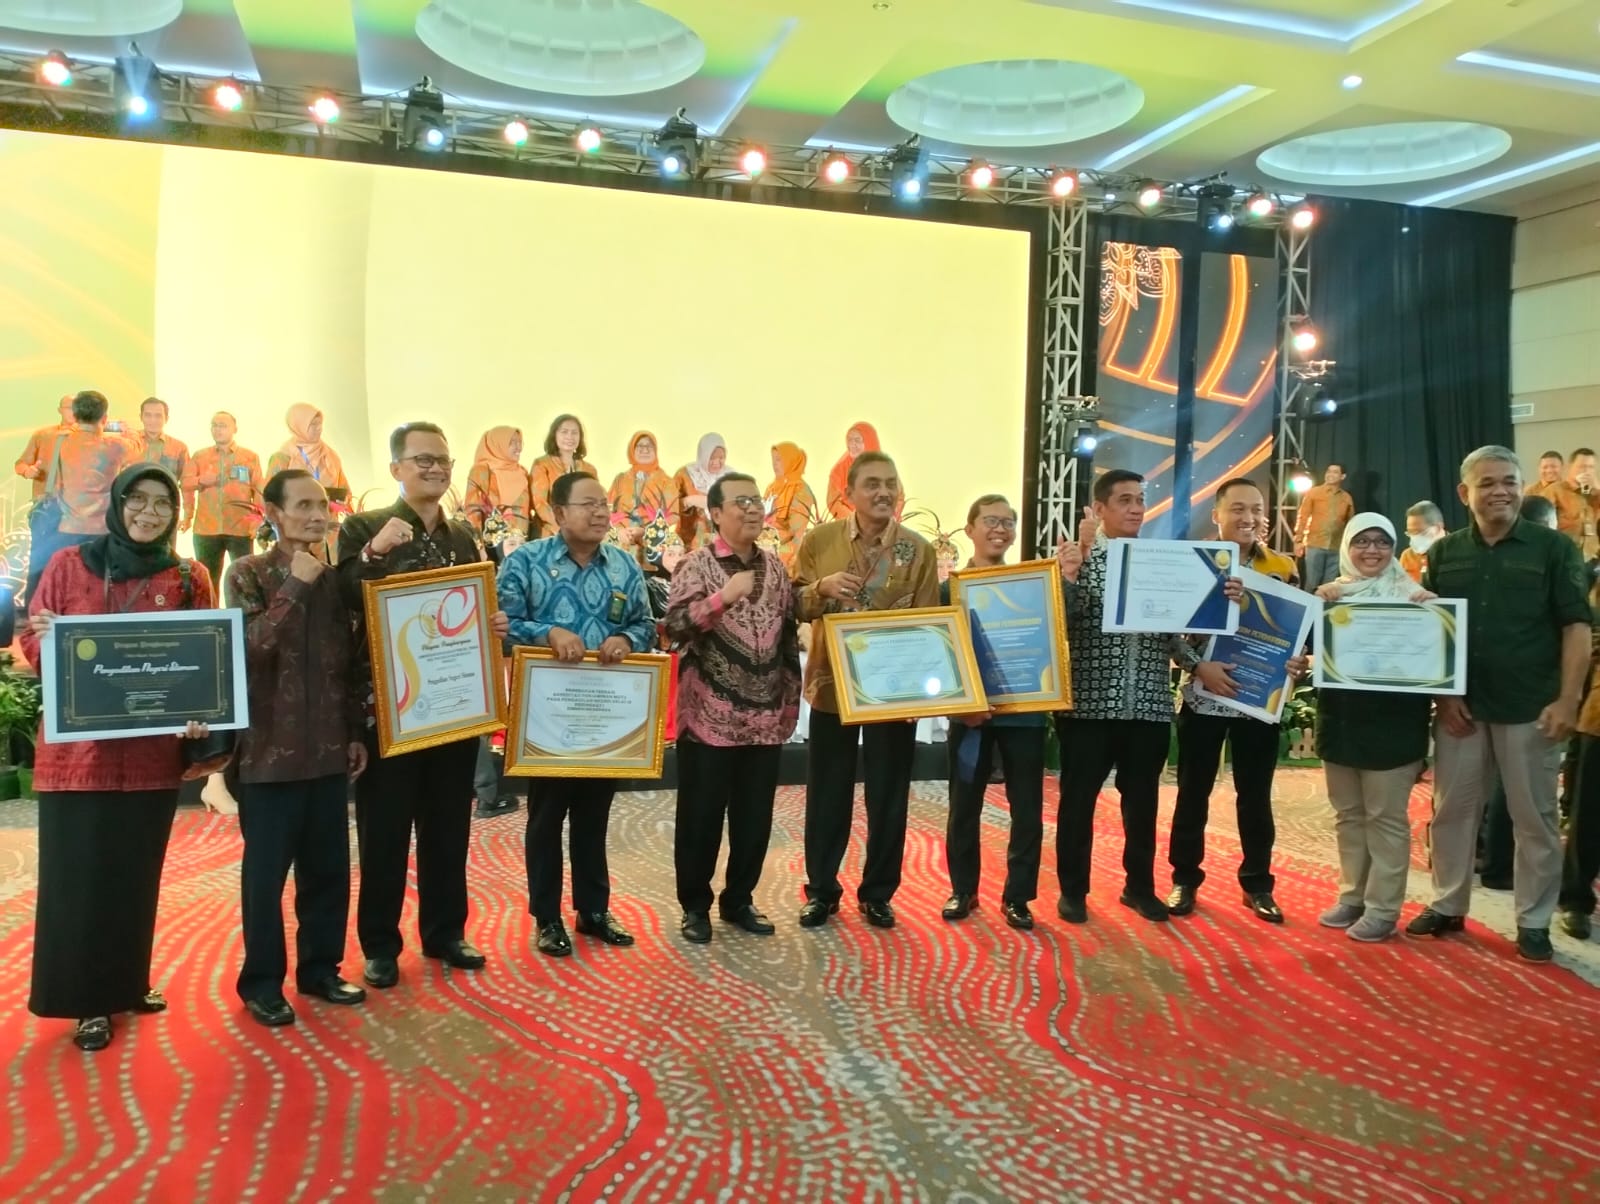 Pengadilan Negeri Yogyakarta Mendapatkan Penghargaan Peningkatan Kinerja Bagi Peradilan Umum